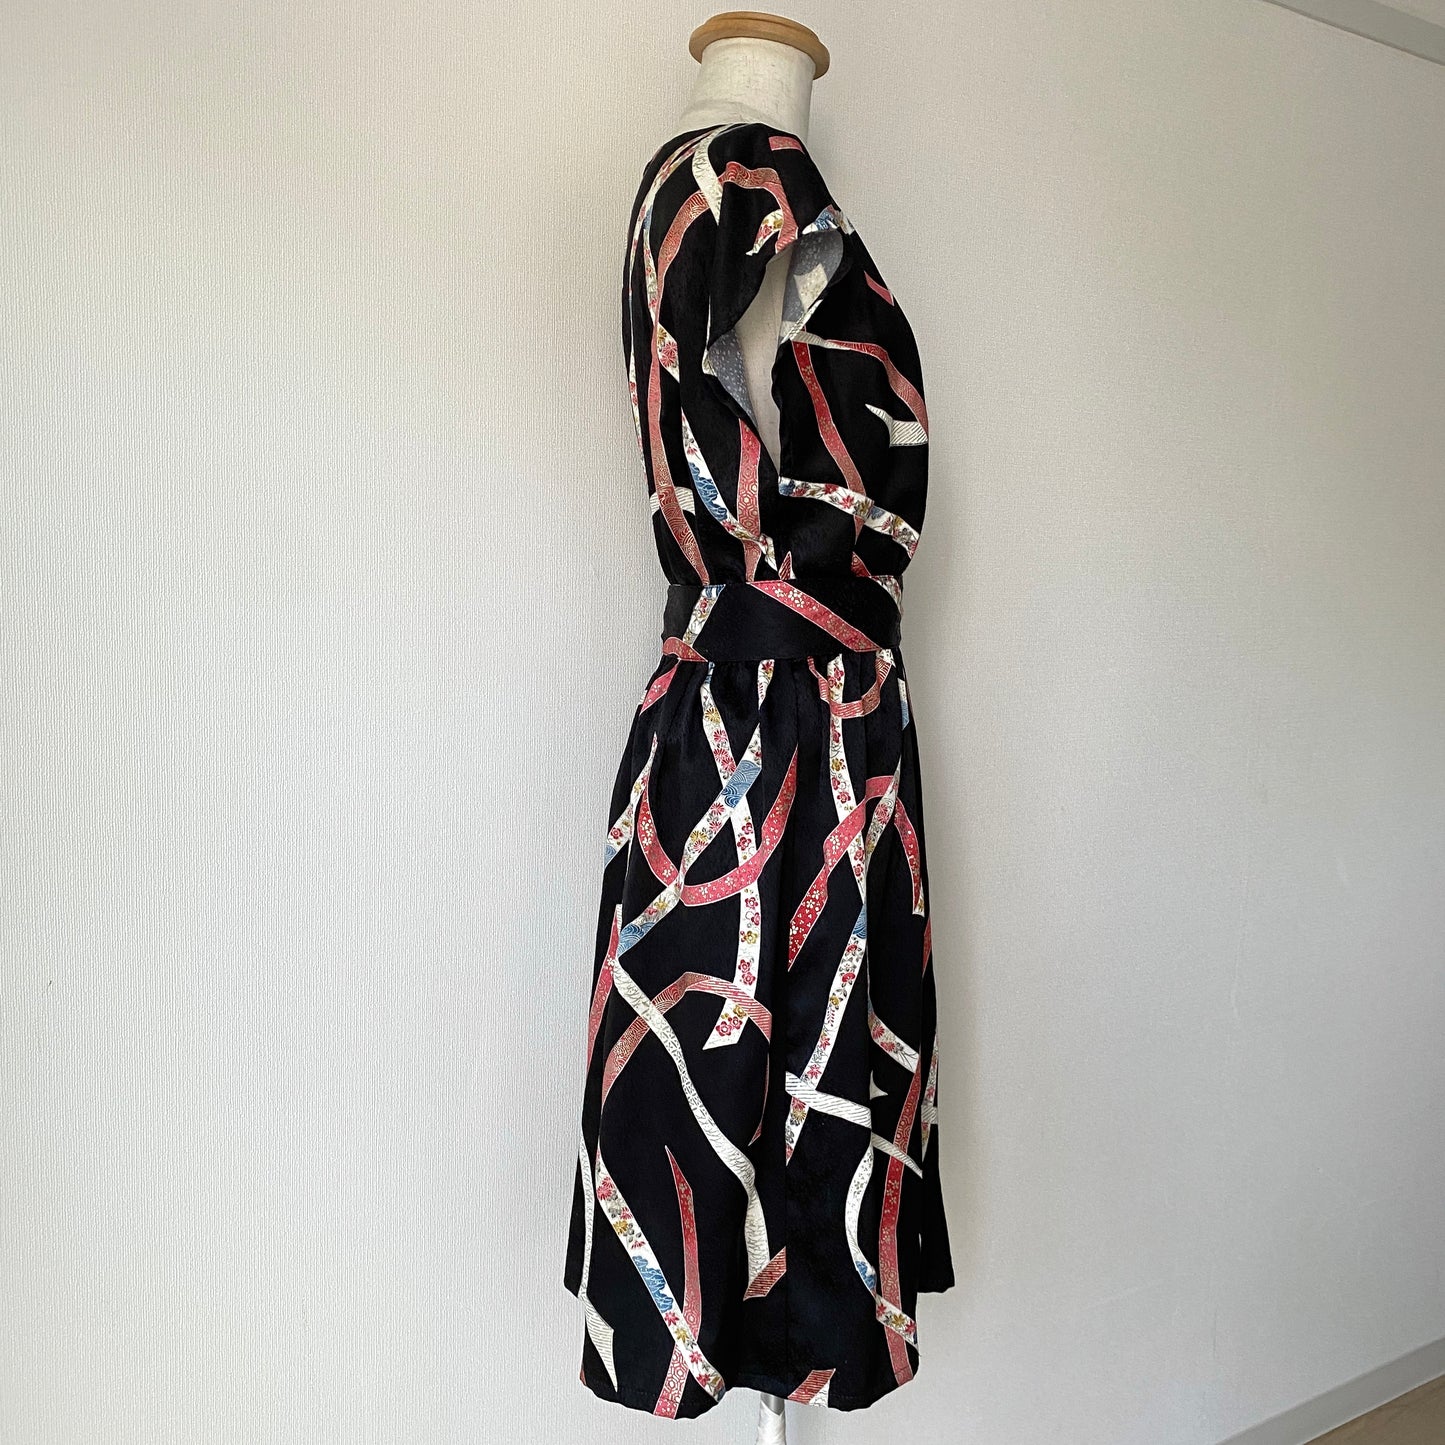 Kimono robe en soie, Komon 小紋, fabriquée à la main, recyclée